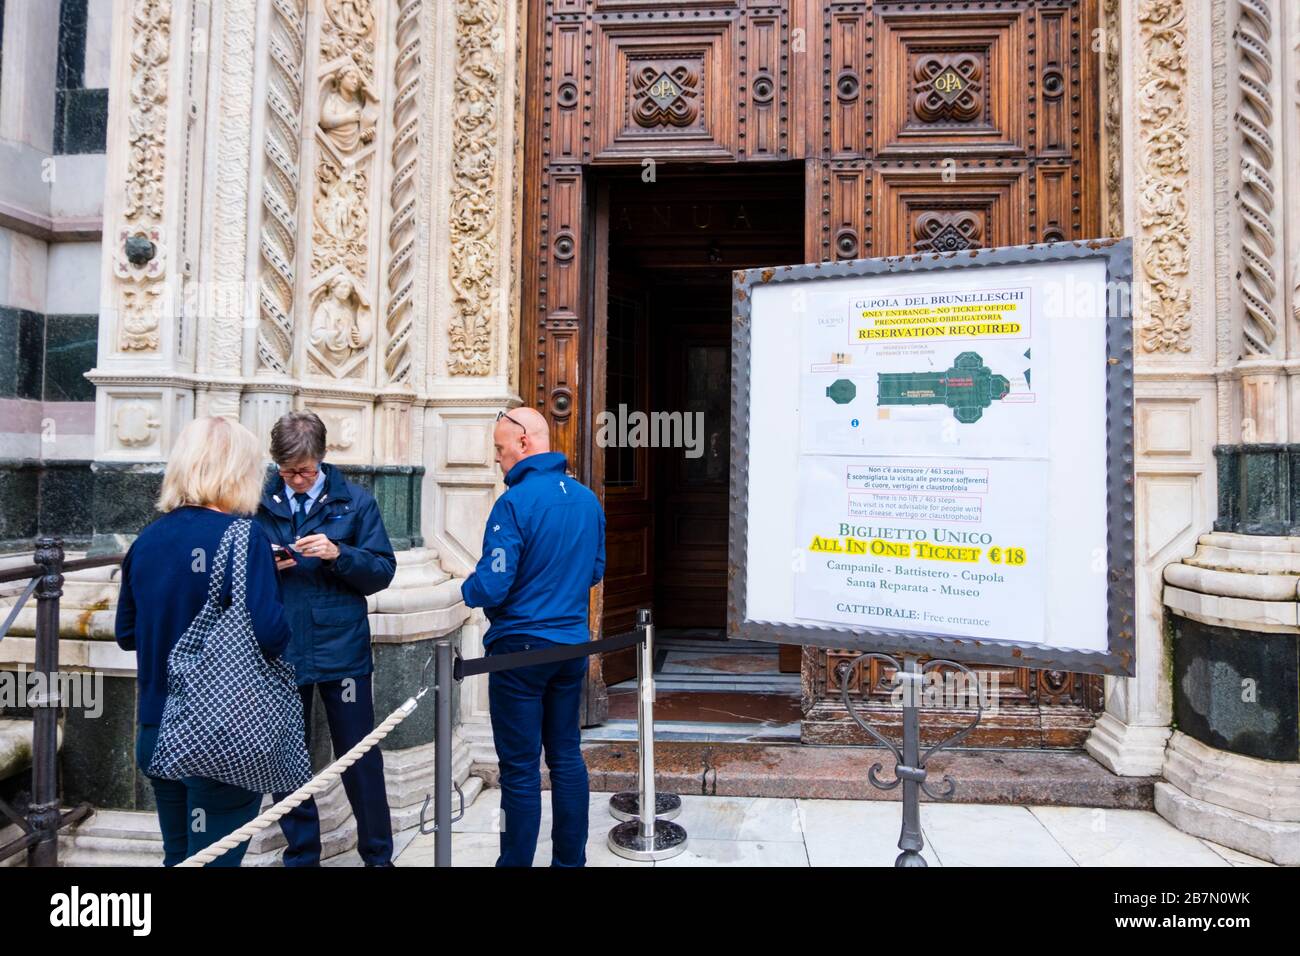 Entrada al Duomo, Cattedrale di Santa Maria del Fiore, Catedral de Florencia, Piazza del Duomo, Florencia, Italia Foto de stock